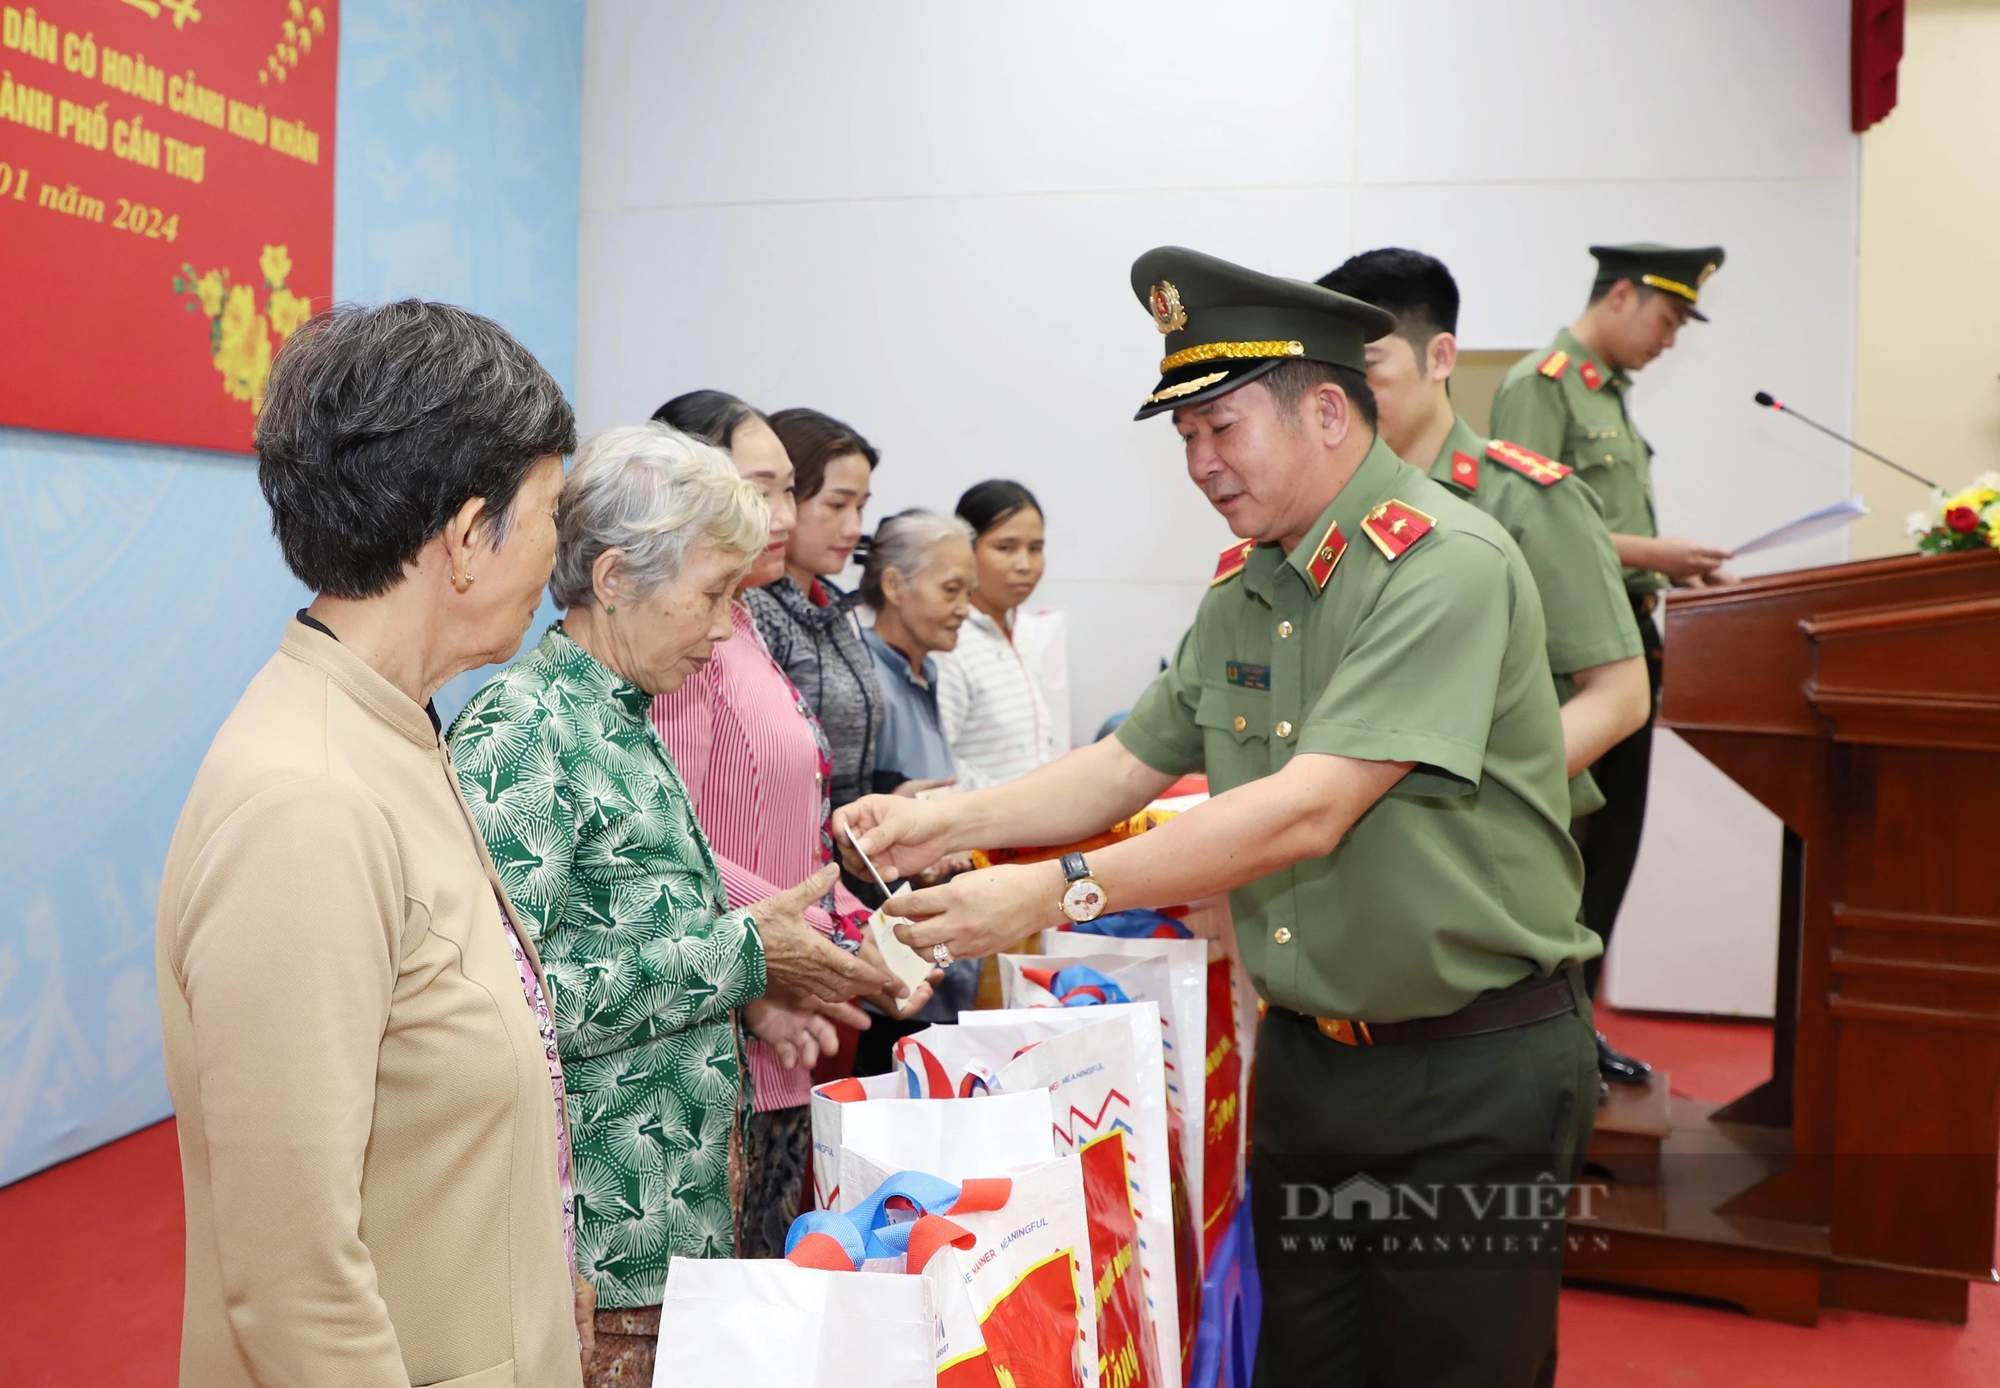 Thiếu tướng Đinh Văn Nơi trao nhà Đại đoàn kết và tặng quà Tết cho người dân có hoàn cảnh khó khăn ở Cần Thơ- Ảnh 1.